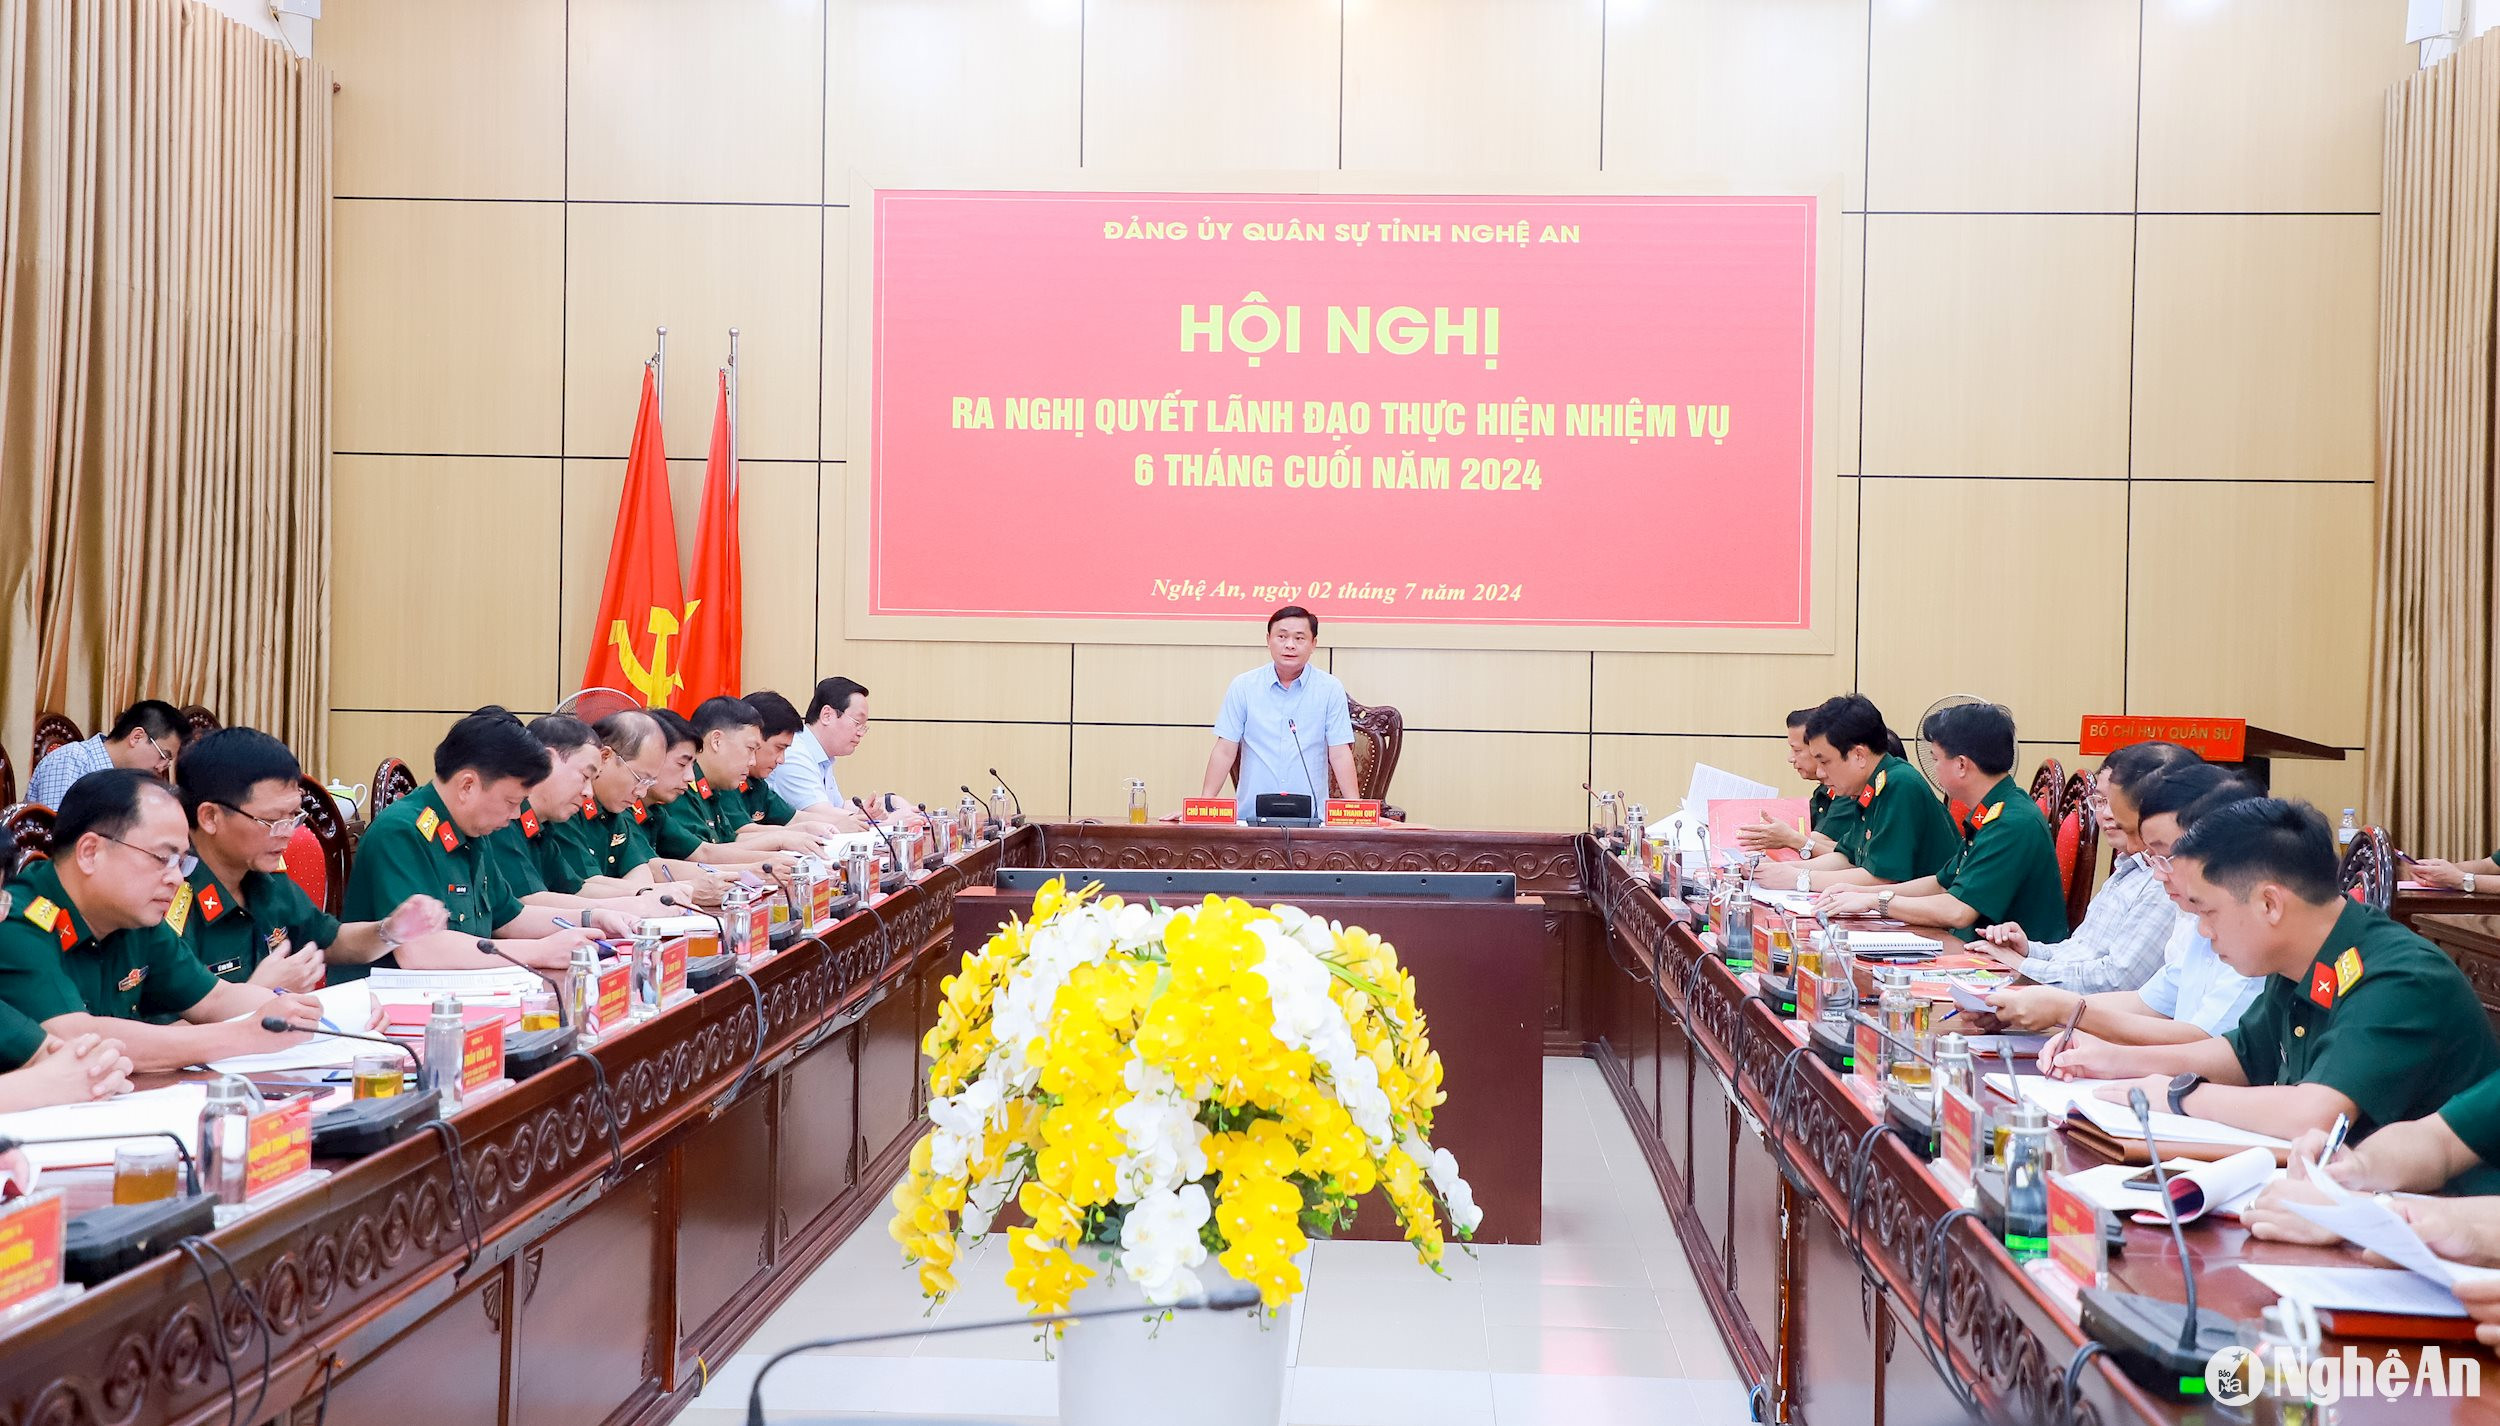 Toàn cảnh Hội nghị Đảng ủy Quân sự tỉnh Nghệ An. Ảnh: Thành Duy